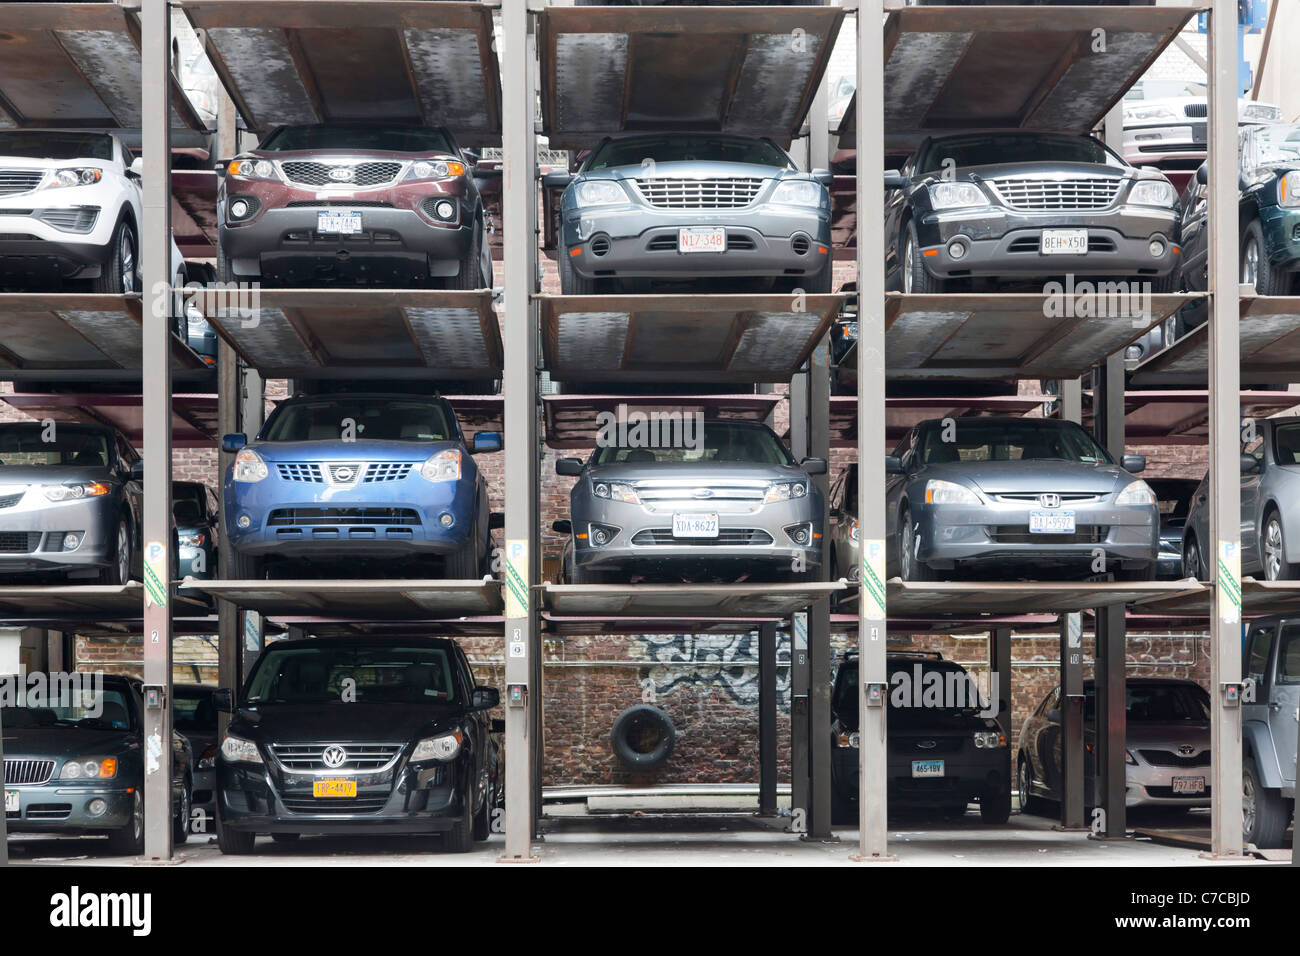 Voitures garées dans des espaces de stationnement hydraulique verticale dans un parking de la ville de New York. Banque D'Images